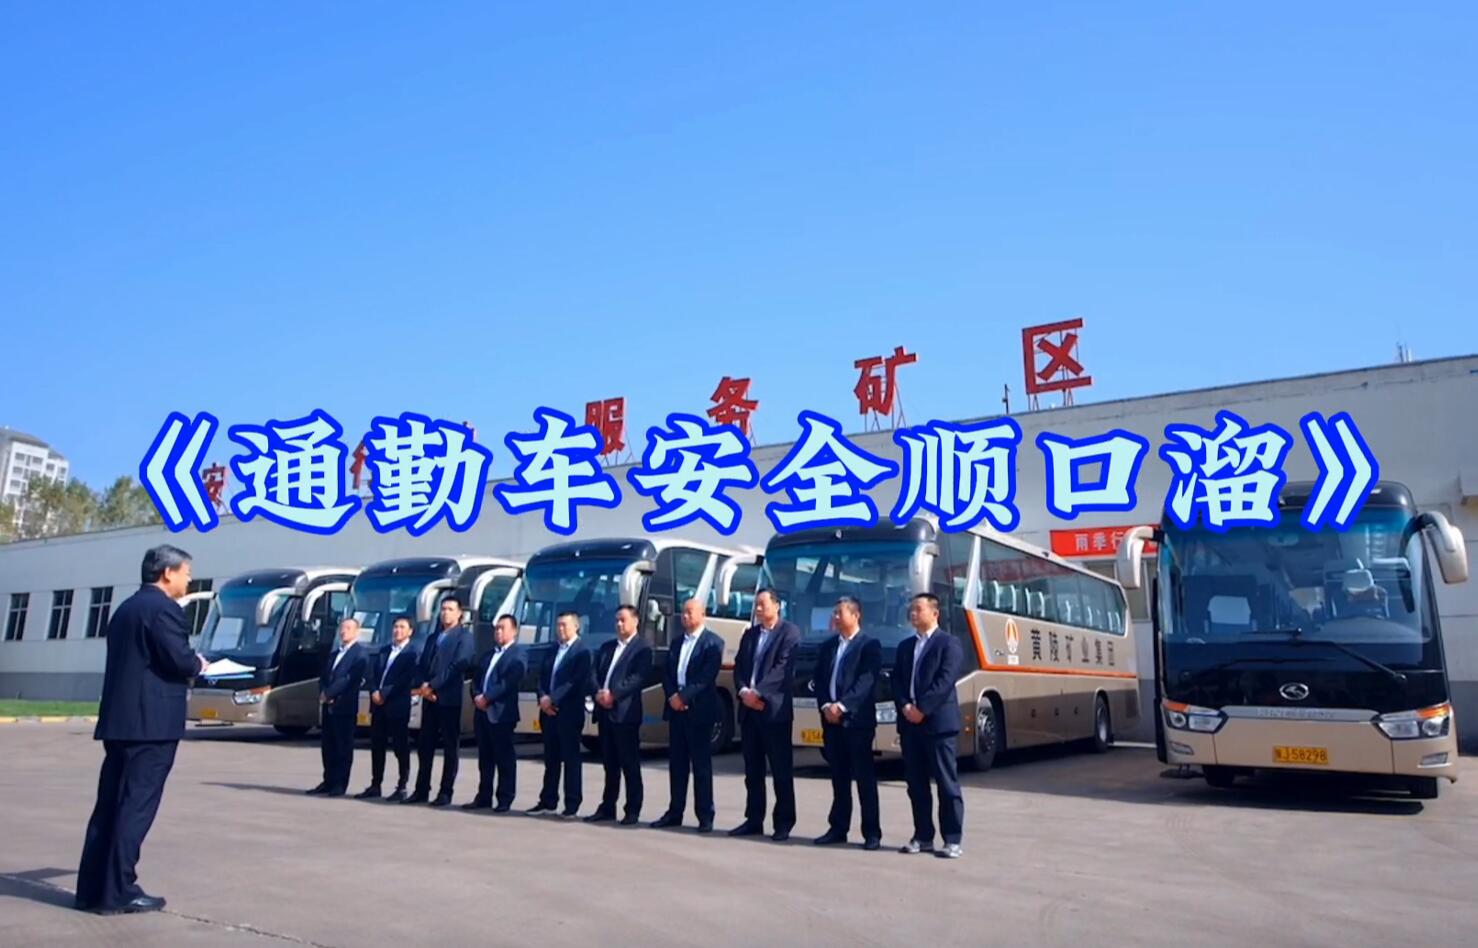 鑫桥公司微视频《通勤车安全顺口溜》